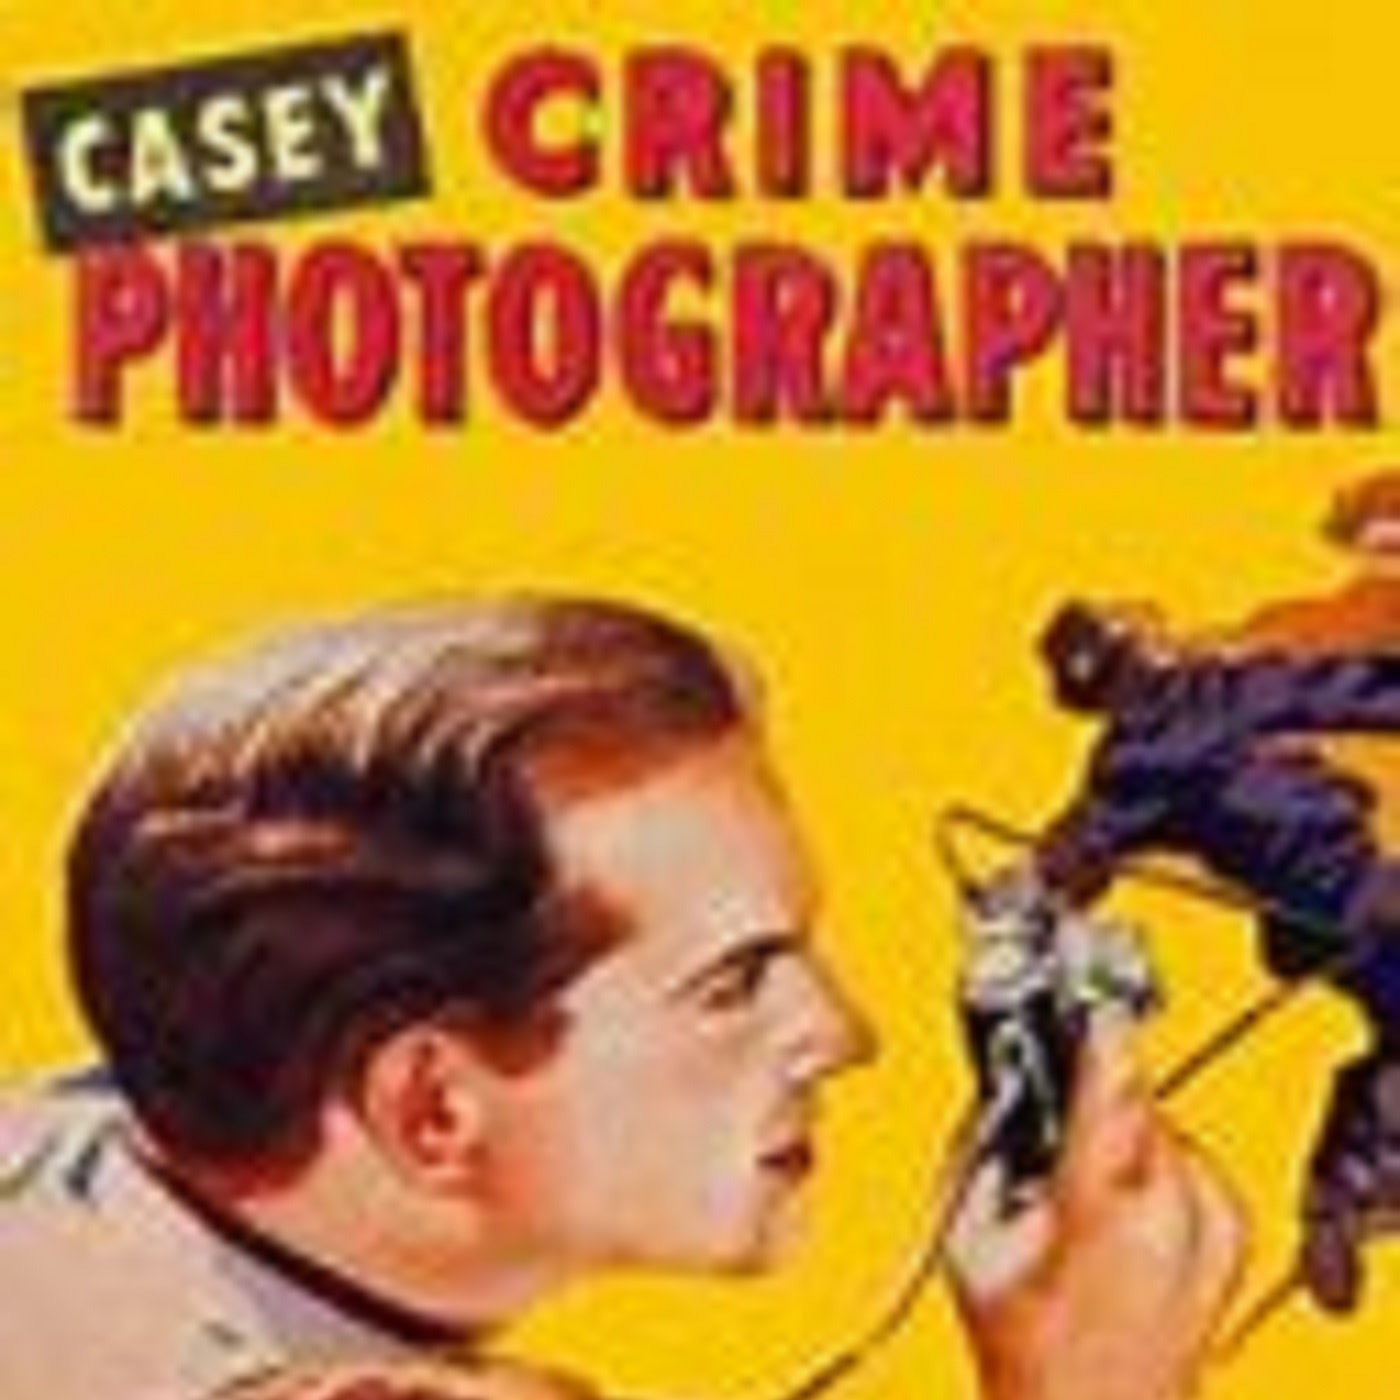 Casey, Crime Photographer